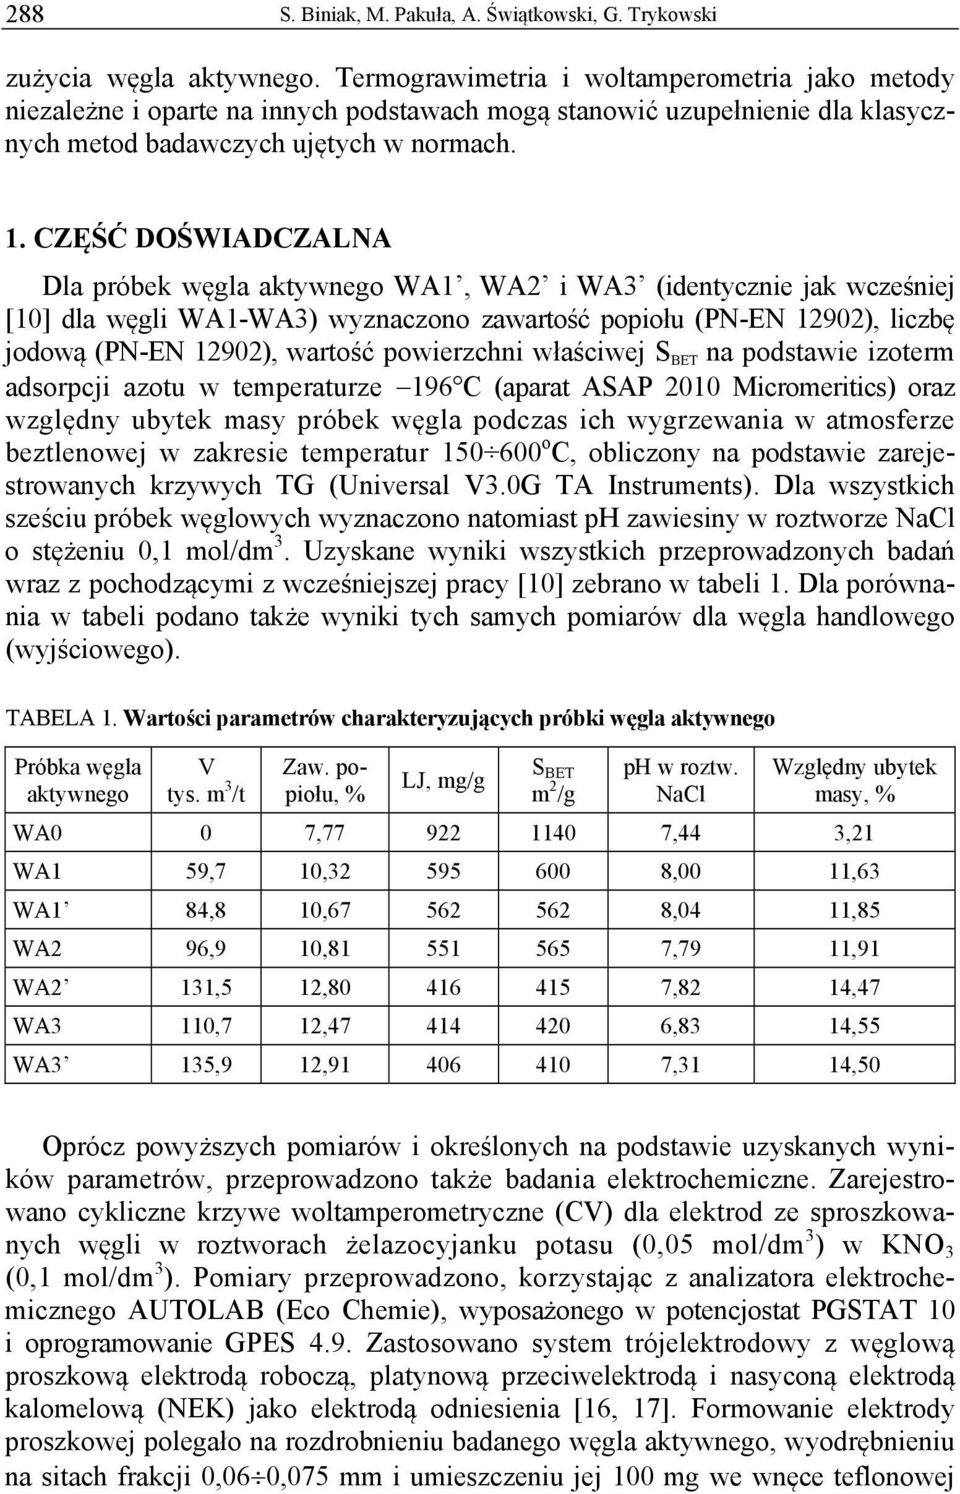 CZĘŚĆ DOŚWIADCZALNA Dla próbek węgla aktywnego WA1, WA2 i WA3 (identycznie jak wcześniej [10] dla węgli WA1-WA3) wyznaczono zawartość popiołu (PN-EN 12902), liczbę jodową (PN-EN 12902), wartość